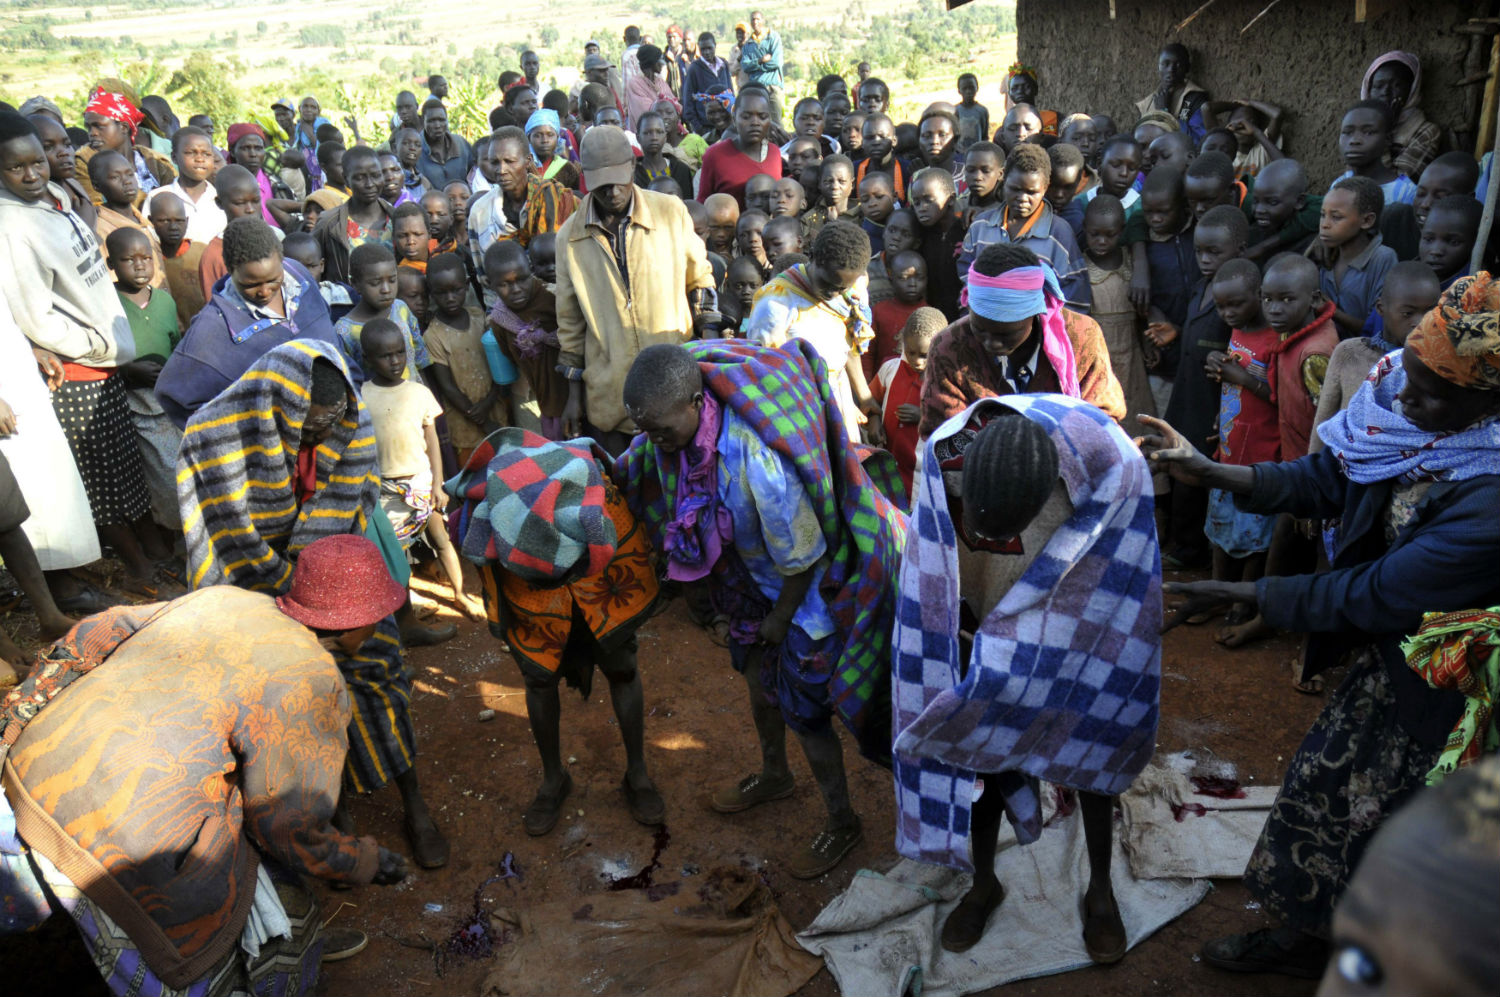 Prisca Korein, un cirujano tradicional de 62 años, lleva a cabo la mutilación genital femenina a varias niñas de la tribu de sebei, en el distrito de Bukwa, Kampala. 15 de diciembre de 2008. (Foto: James Akena | Reuters)